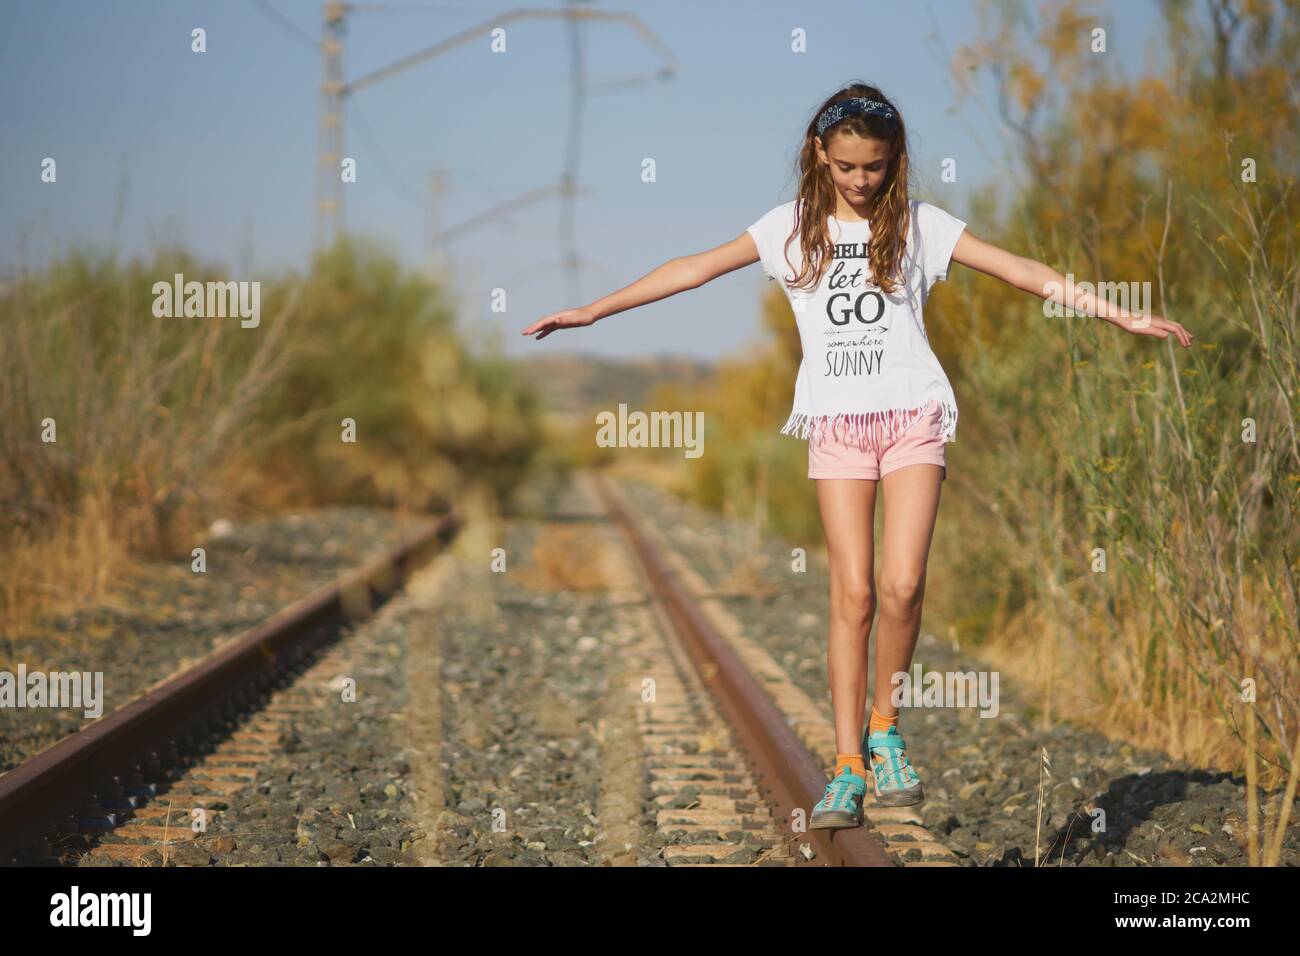 chica jugando equilibrio en una pista de tren abandonada en el campo Foto de stock